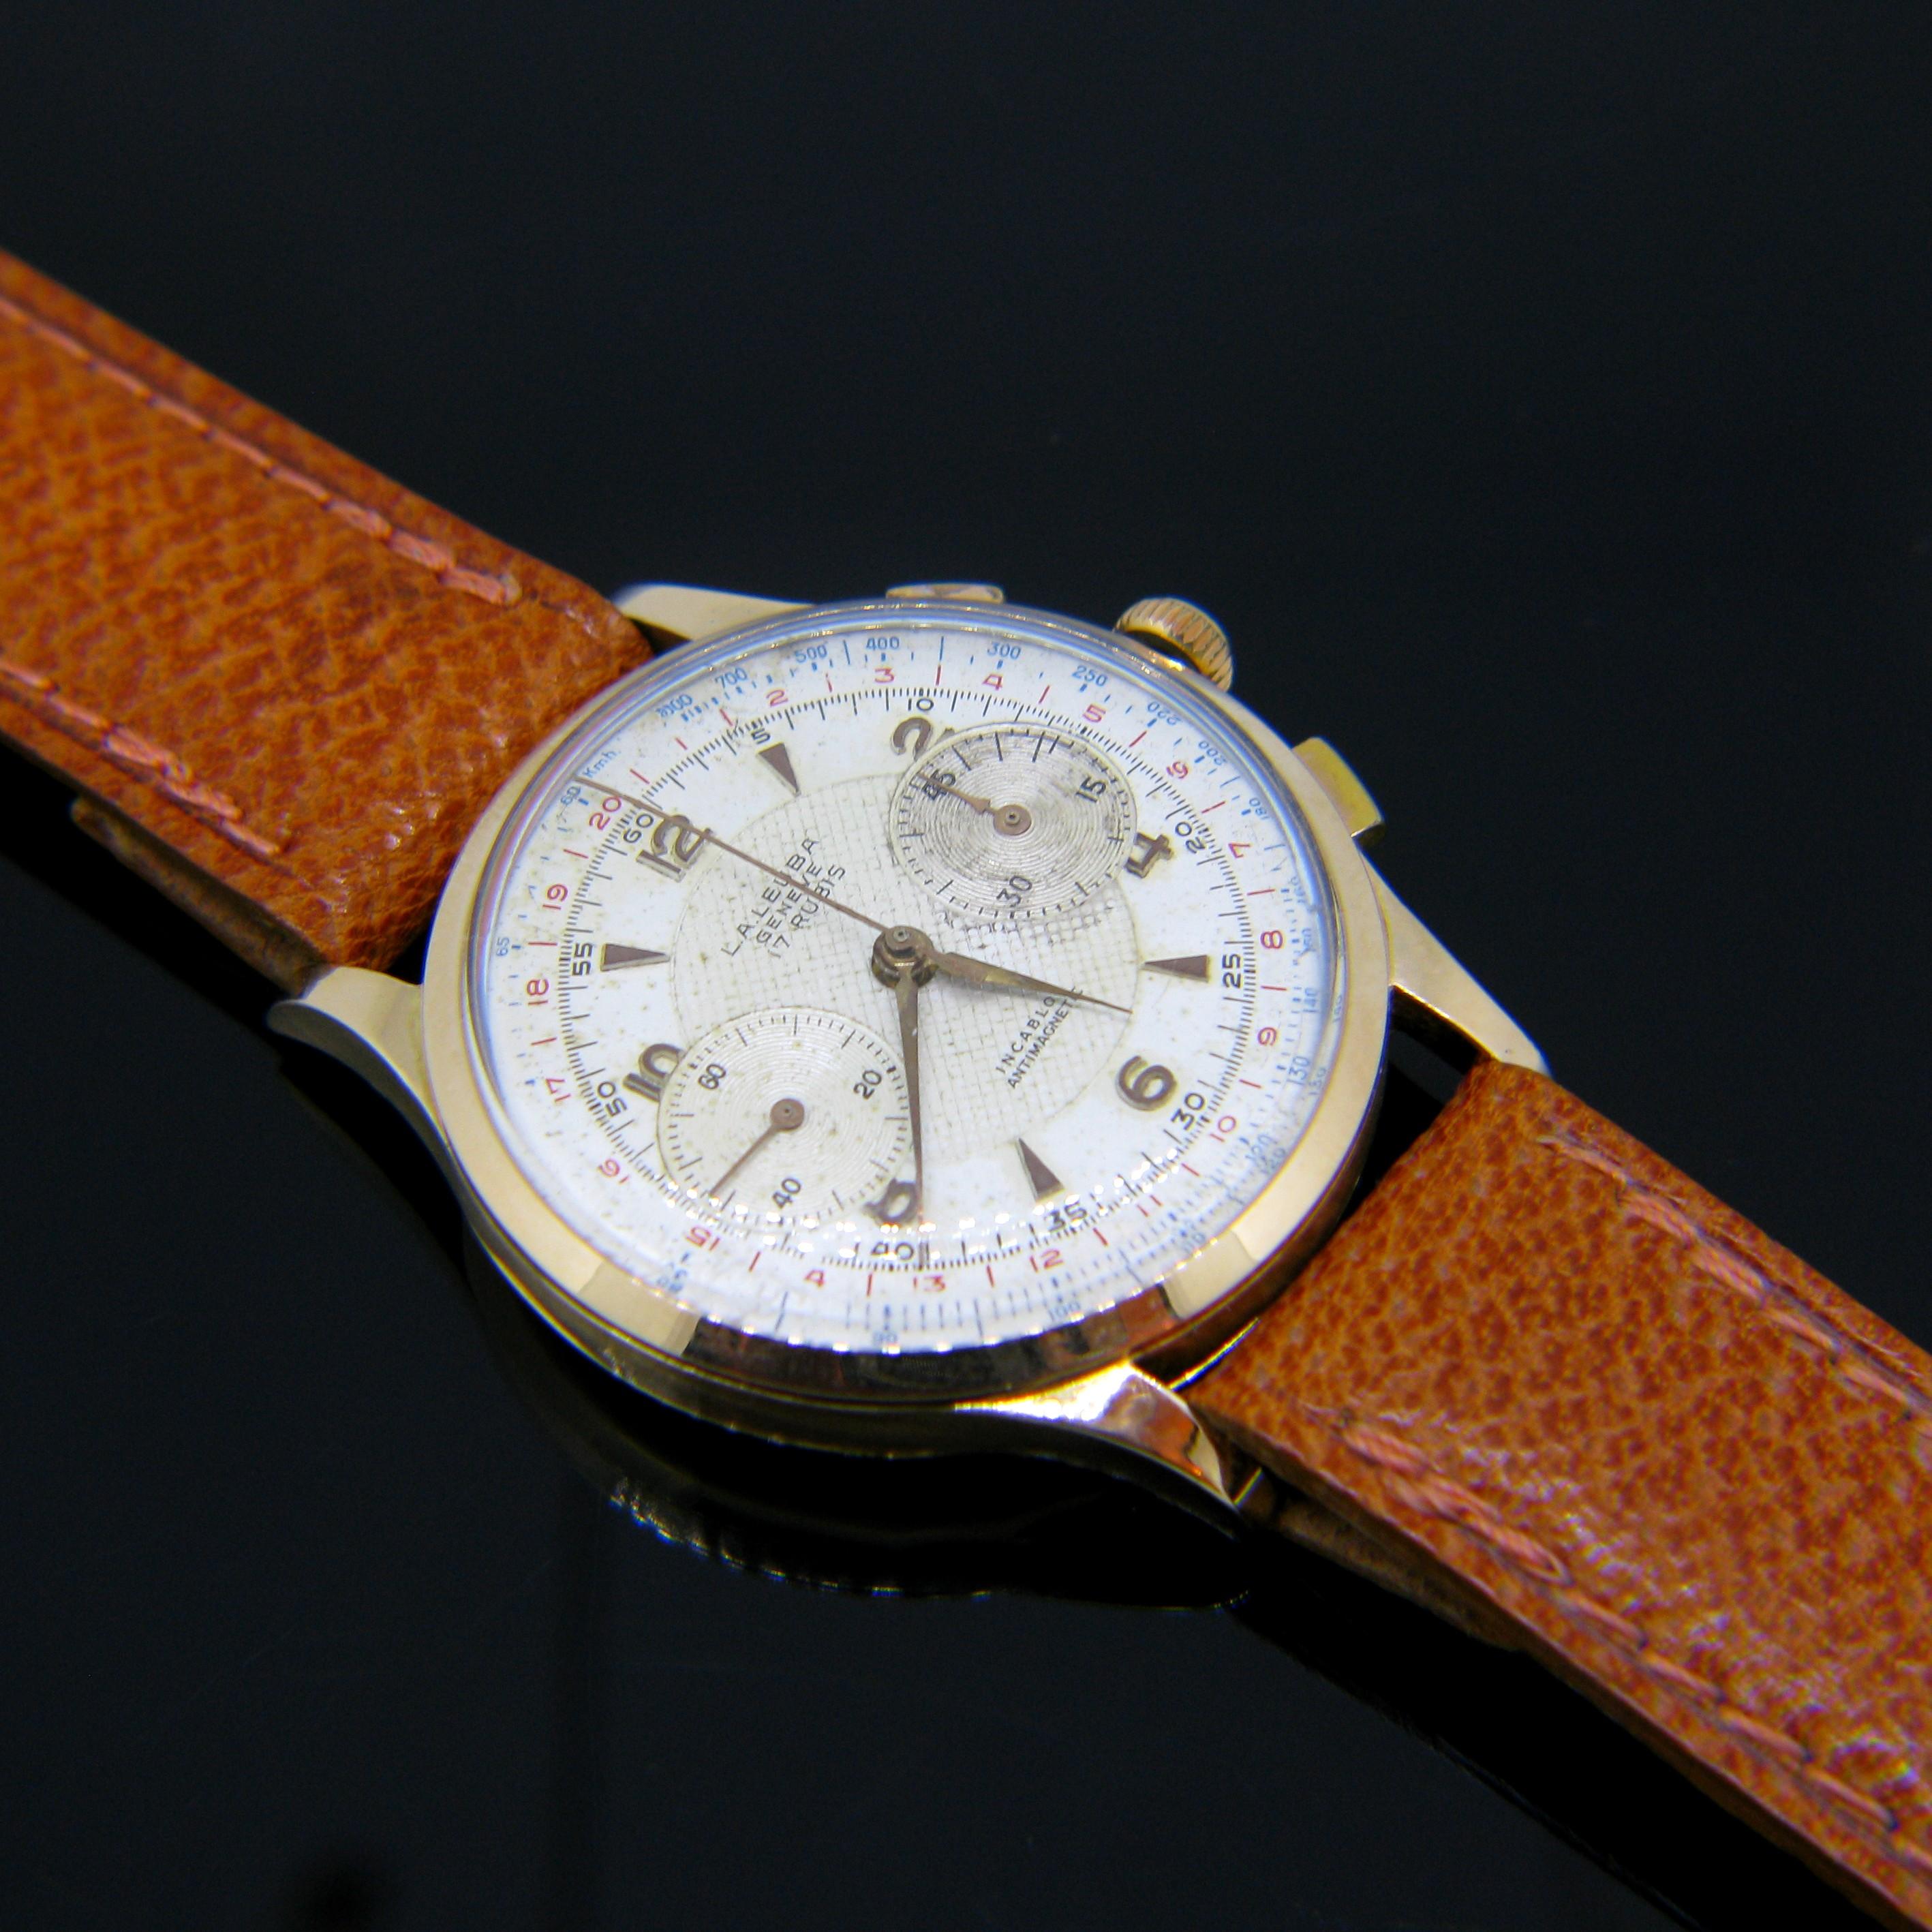 Cette montre vintage L.A. Leuba des années 50 fonctionne bien. Louis A. Leuba est une entreprise suisse du 20ème siècle. Pour cette montre, ils ont adapté le  célèbre mouvement chronographe Venus 188.

Poids total :	46.8 g

Métal :		Or jaune/rose